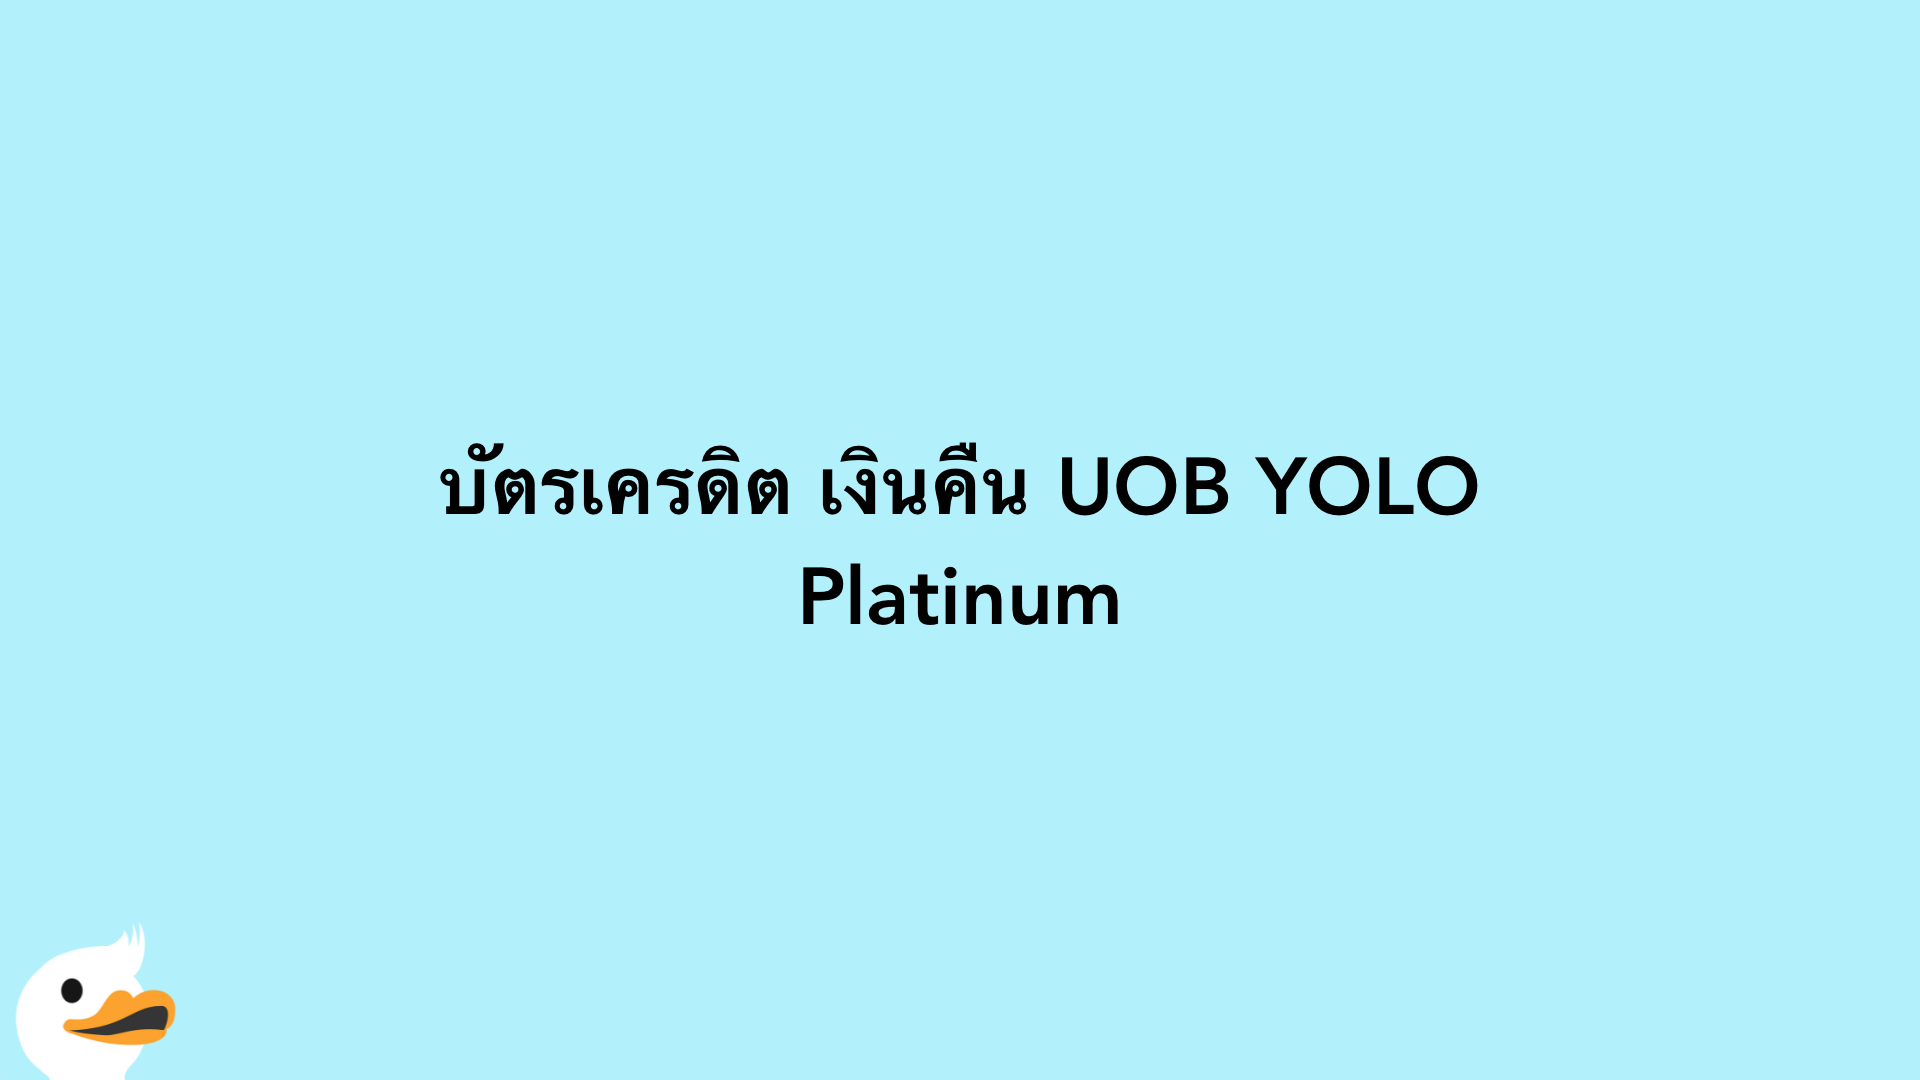 บัตรเครดิต เงินคืน UOB YOLO Platinum